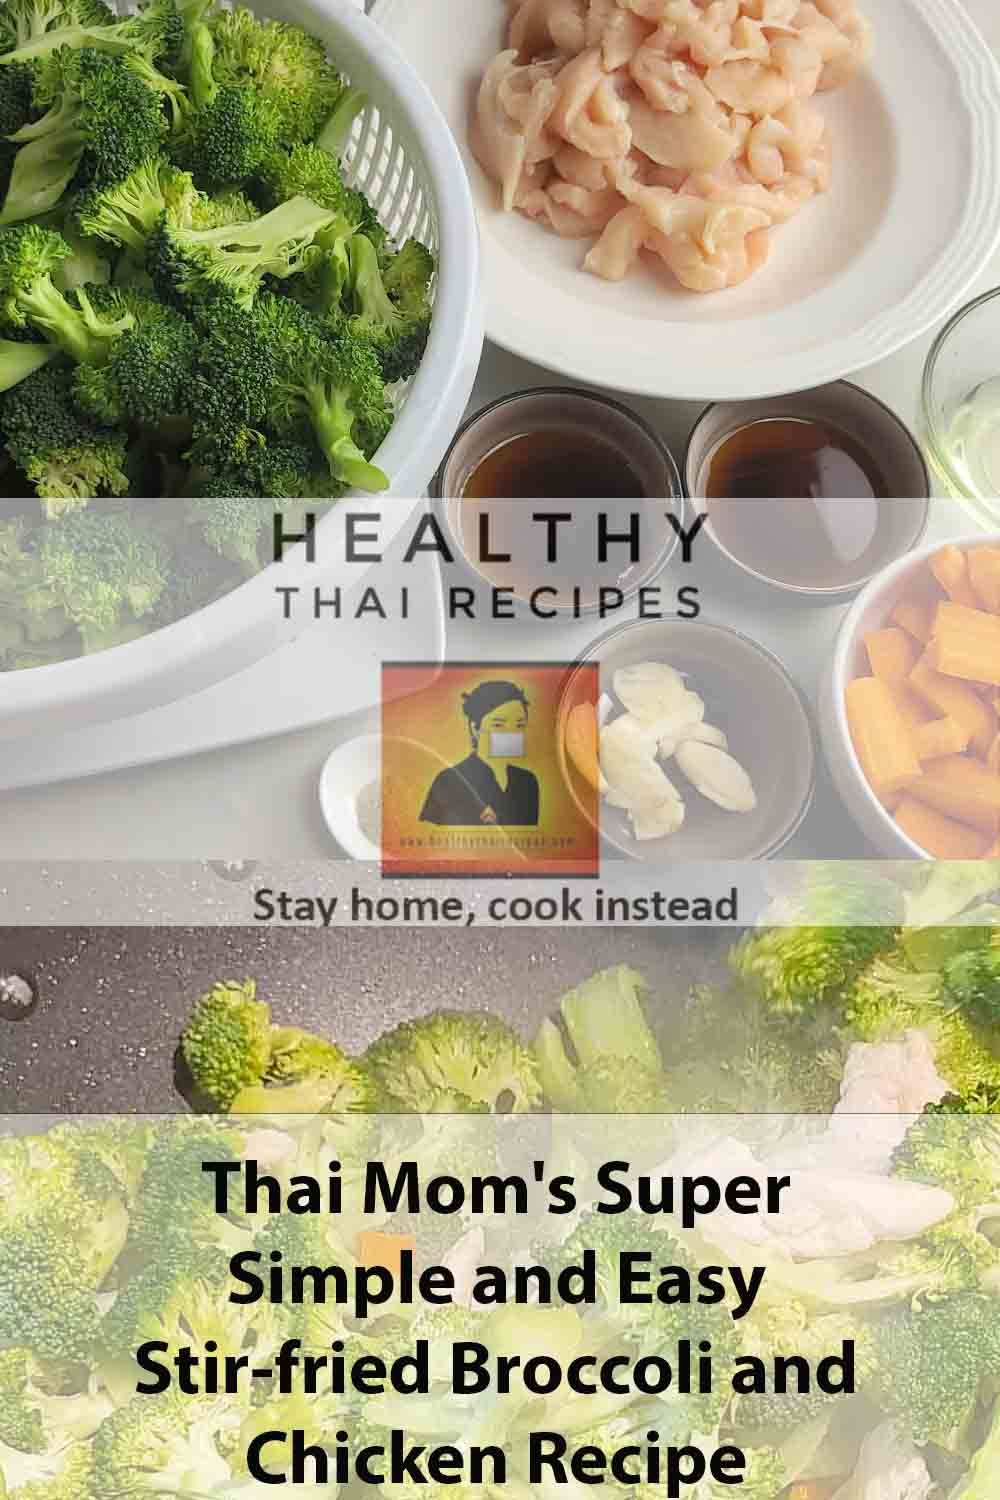 Receta súper sencilla y fácil de brócoli y pollo salteado de mamá tailandesa Pinterest Image